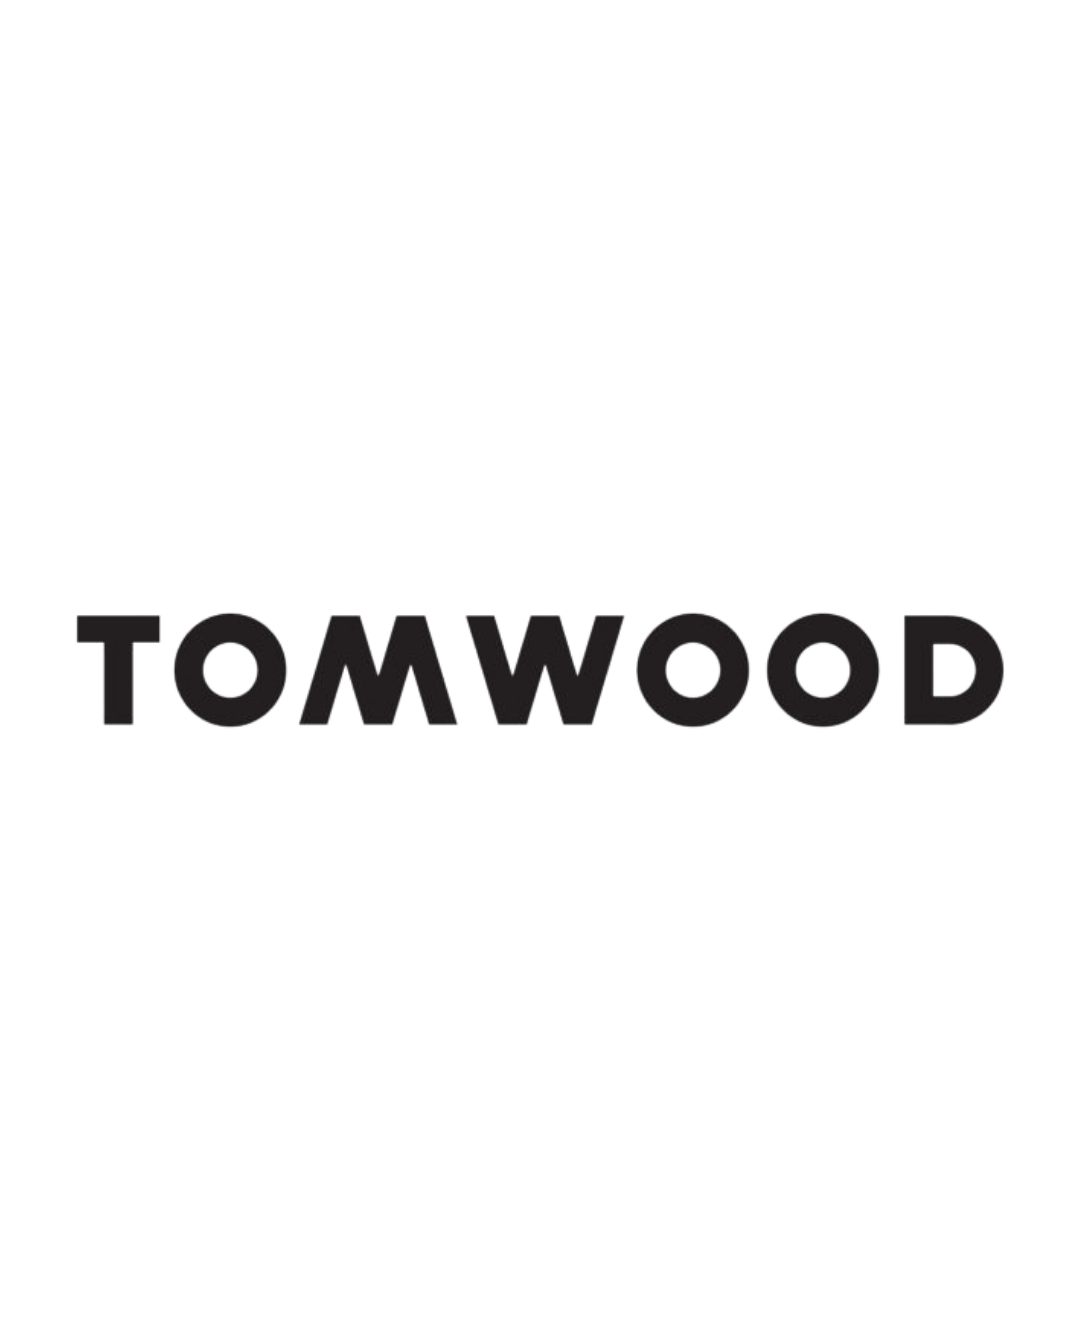 Tom Wood